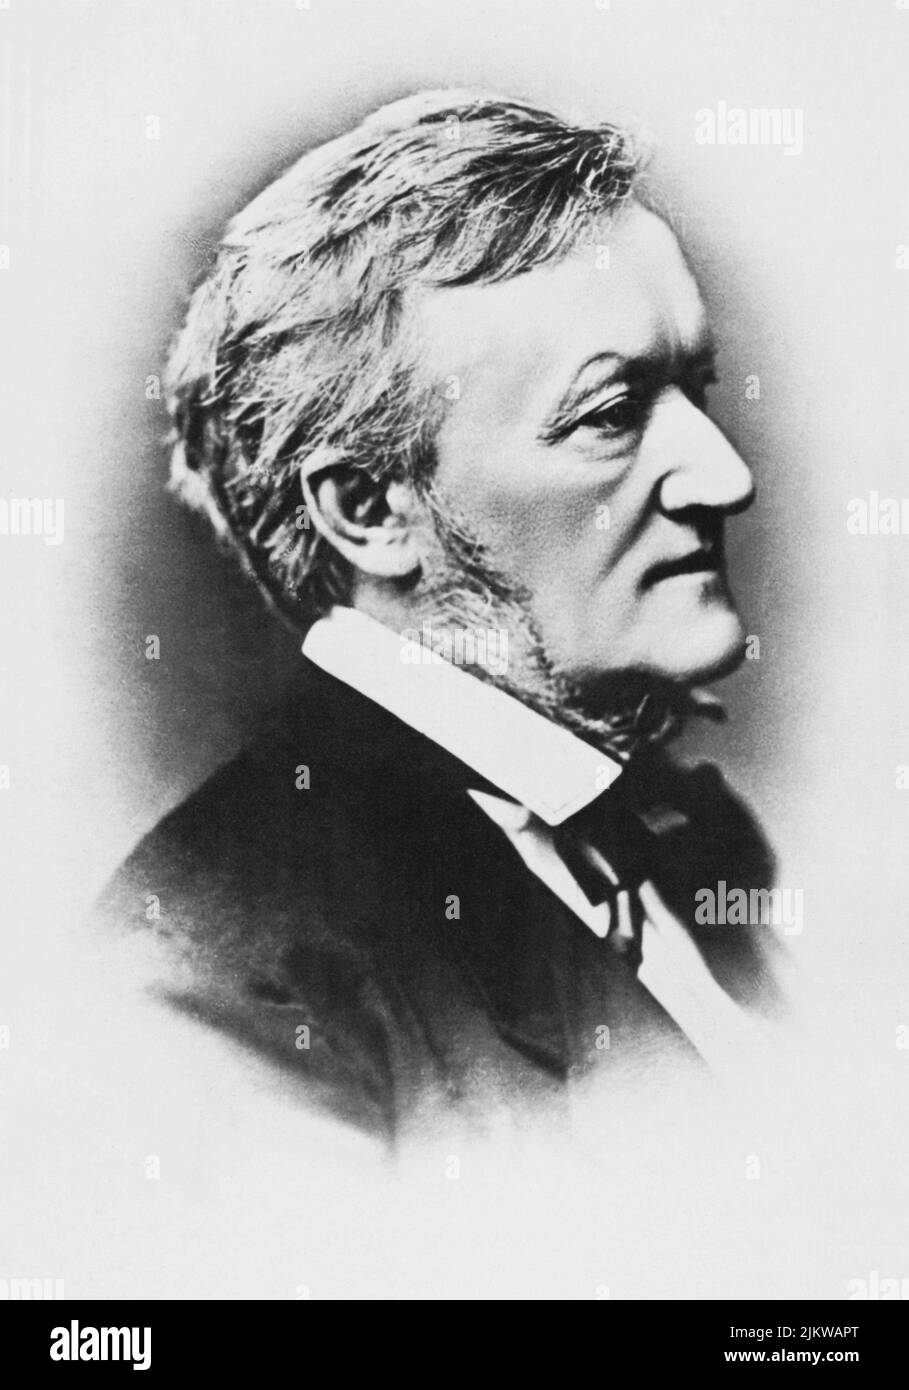 1880 c. : El compositor alemán RICHARD WAGNER ( 1813 - 1883 ) - MÚSICA - CLÁSICA - MUSICA CLASSICA - LÍRICA - OPERA - compositore - musista - retrato - ritratto - cravatta - papillon - corbata - collar - colletto - perfil --- Archivio GBB Foto de stock